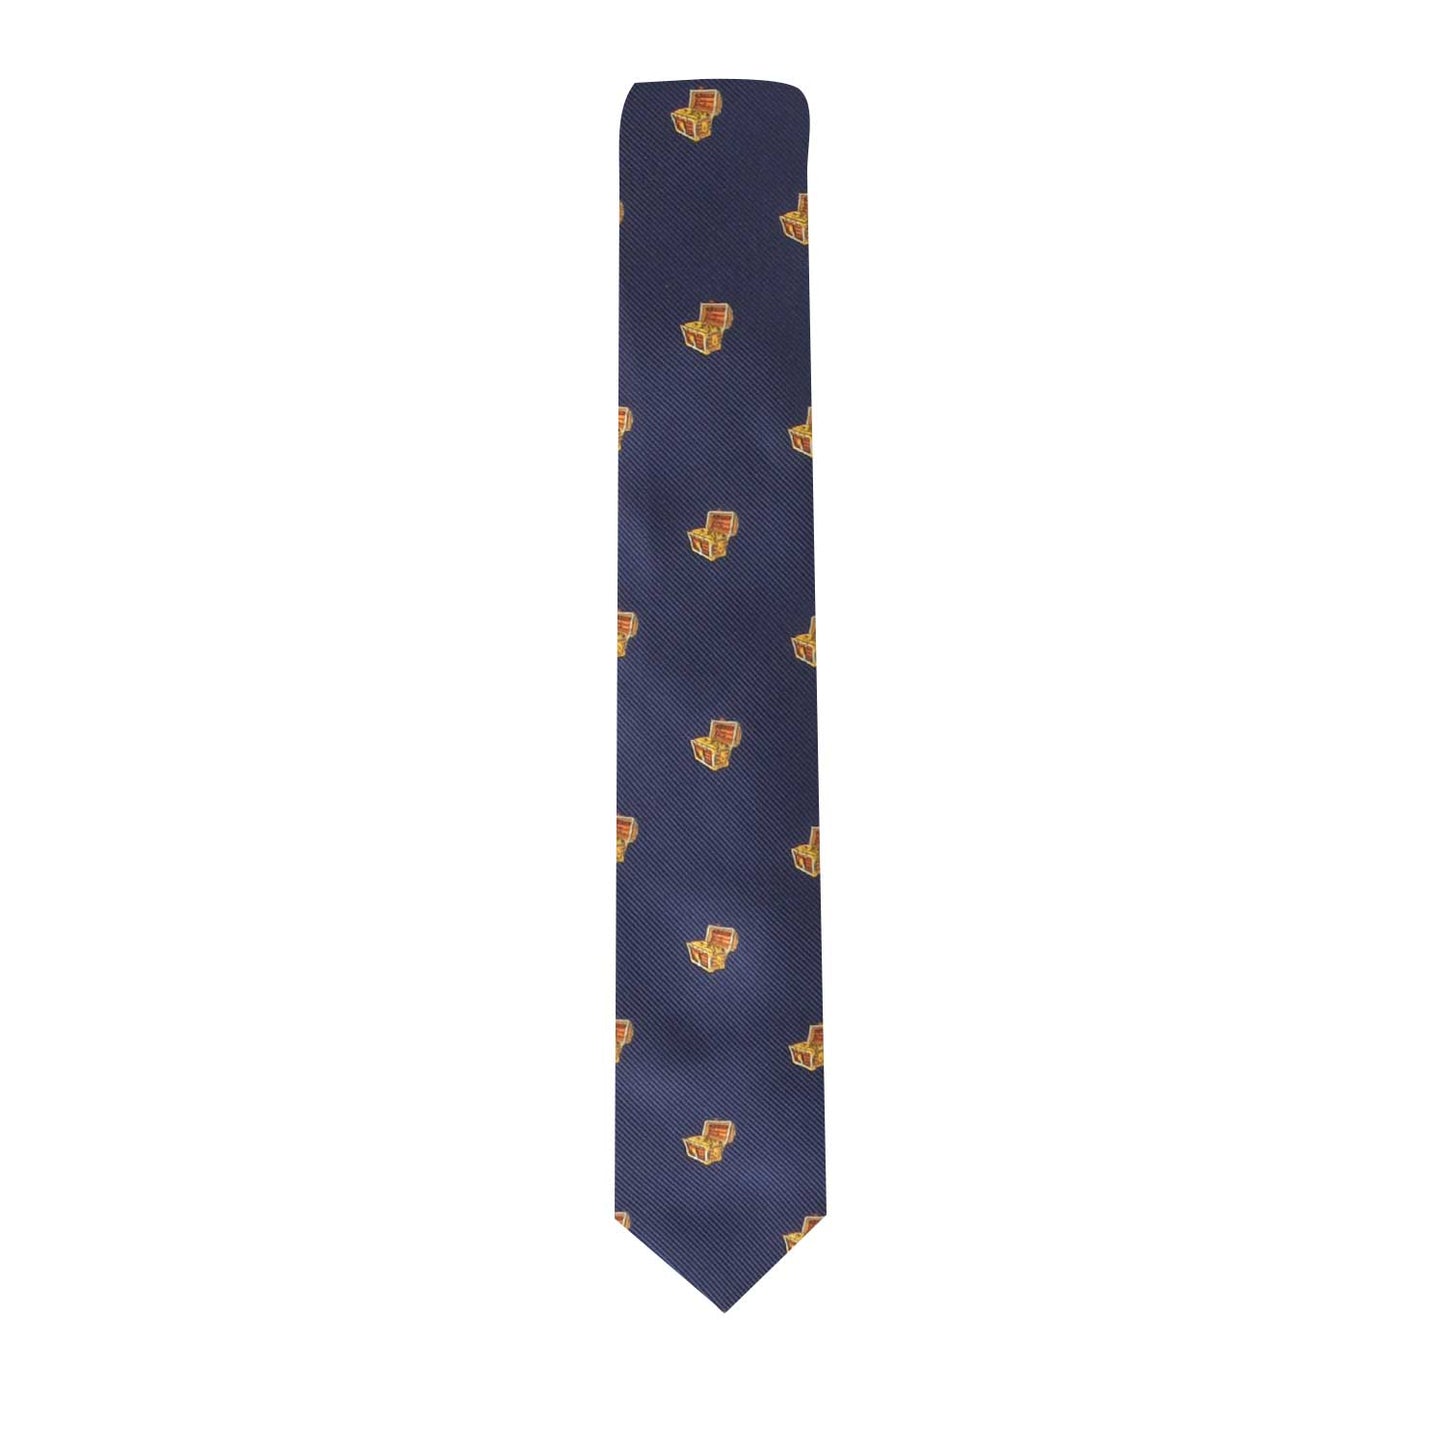 Treasure Chest Skinny Tie, an attire designed for adventure.